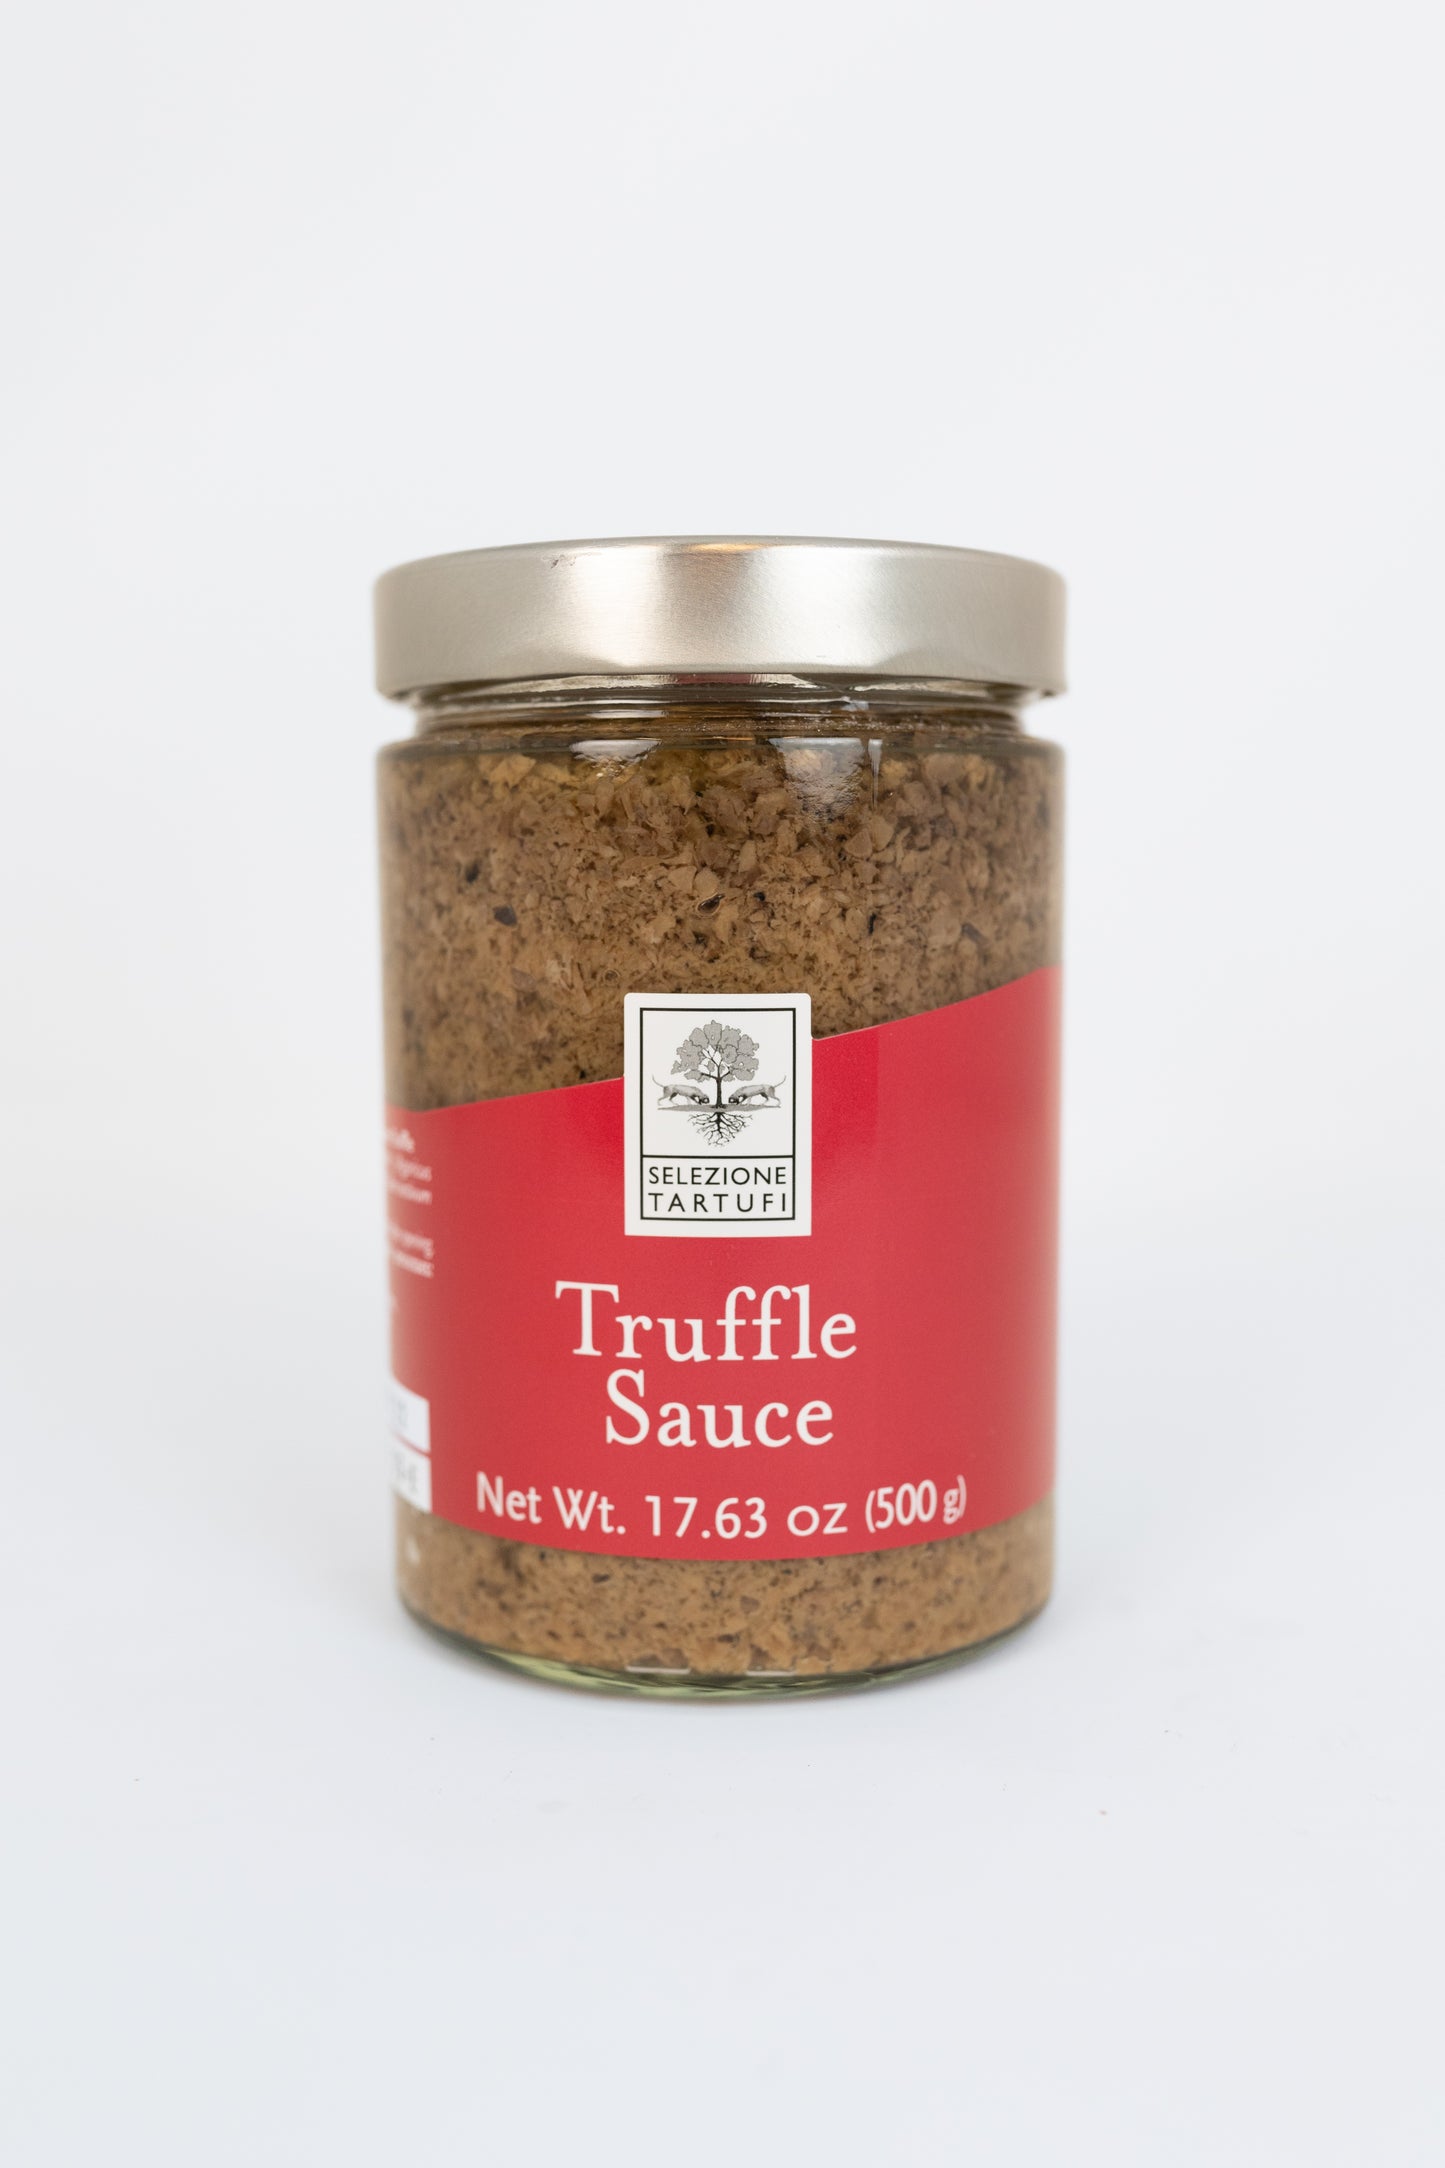 Black Truffle Sauce - Salsa Tartufata - 1.1lbs/500g